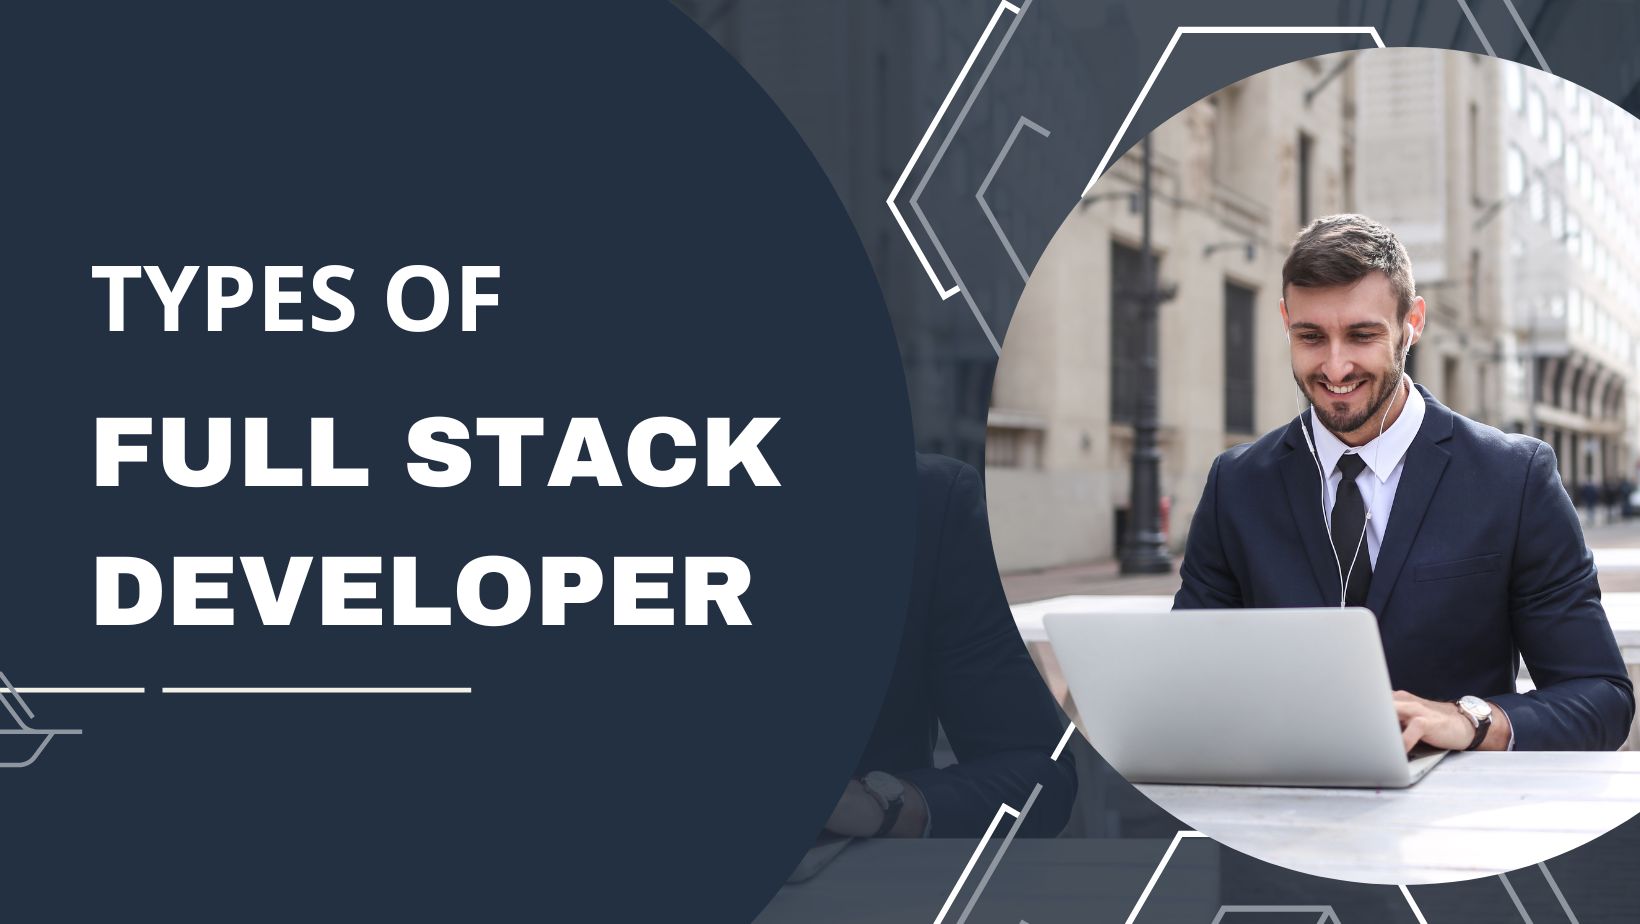 Types of Full Stack Developer